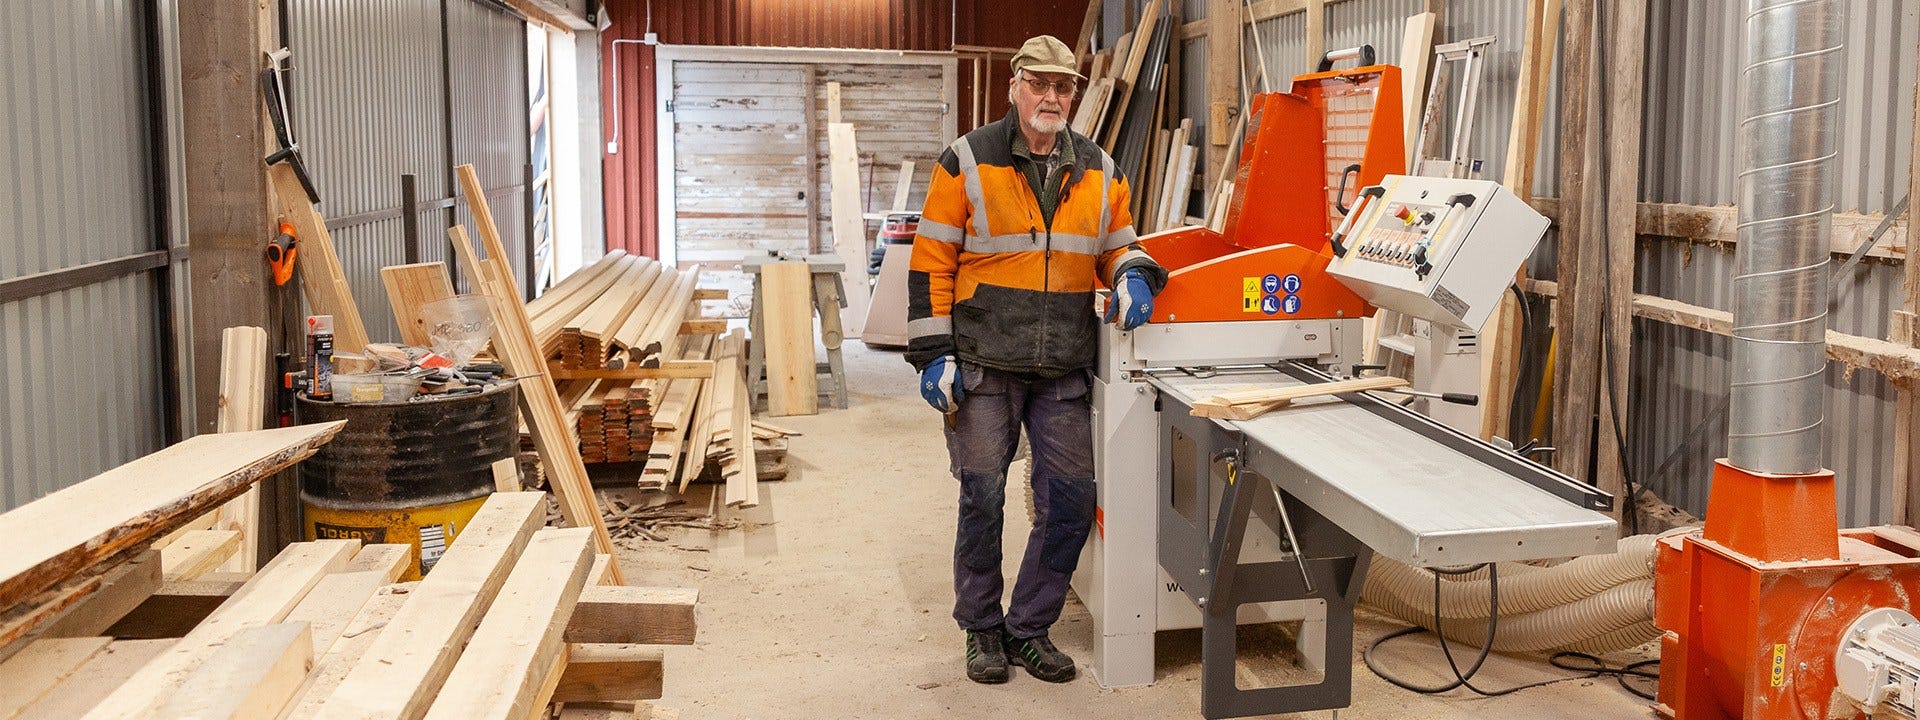 УЛЮБЛЕНА СПРАВА НА ВСЕ ЖИТТЯ – історія деревообробника зі Швеції